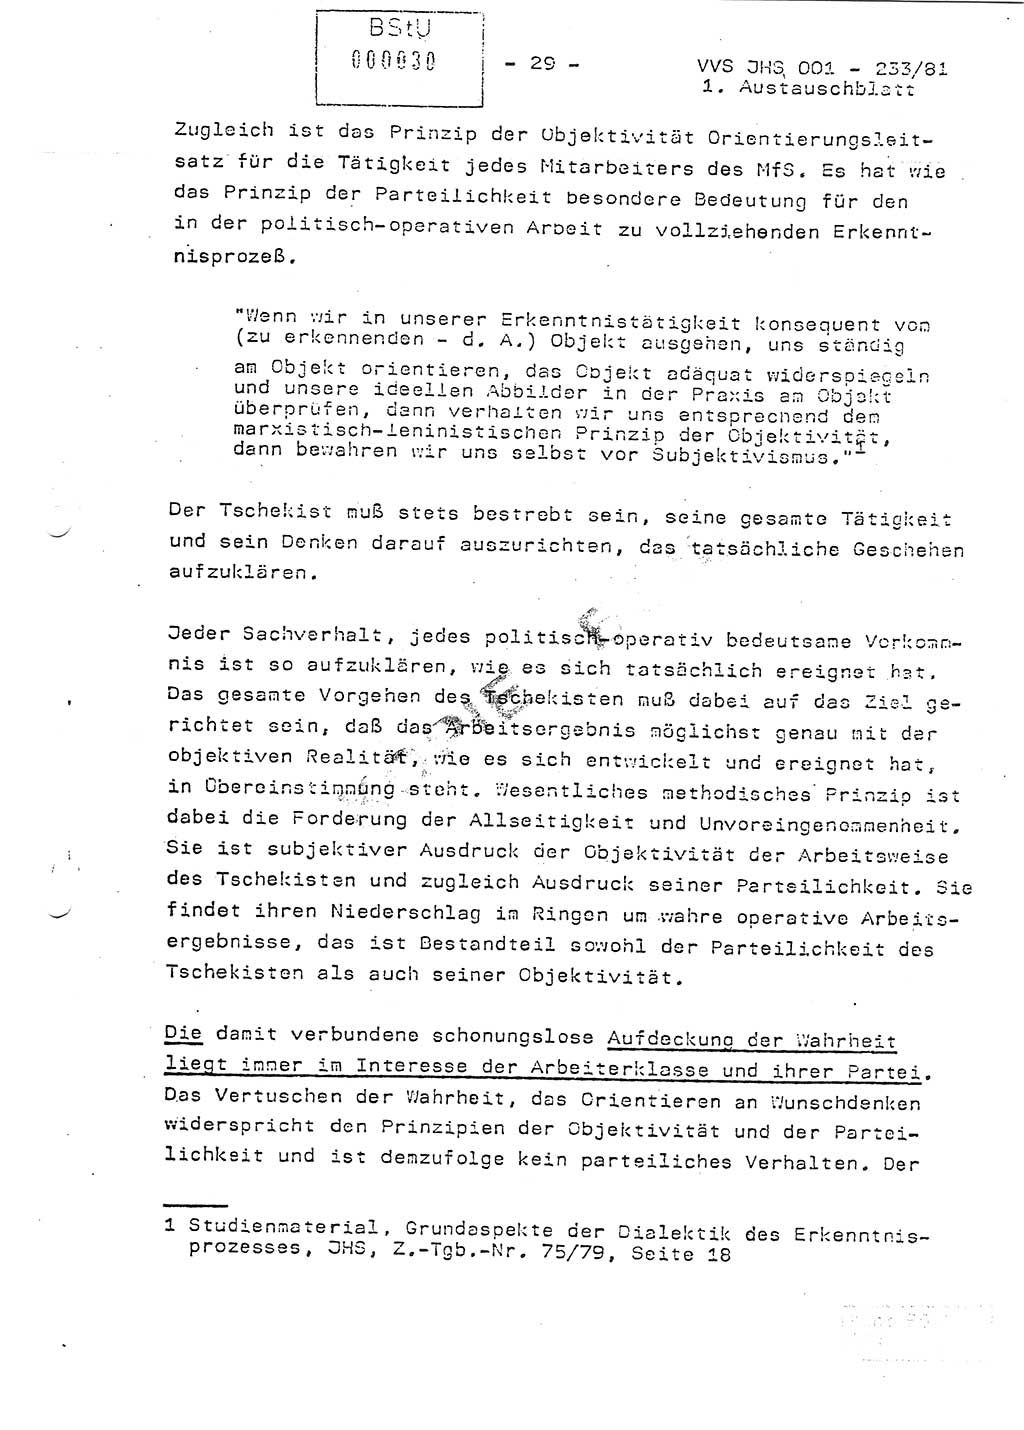 Dissertation Oberstleutnant Horst Zank (JHS), Oberstleutnant Dr. Karl-Heinz Knoblauch (JHS), Oberstleutnant Gustav-Adolf Kowalewski (HA Ⅸ), Oberstleutnant Wolfgang Plötner (HA Ⅸ), Ministerium für Staatssicherheit (MfS) [Deutsche Demokratische Republik (DDR)], Juristische Hochschule (JHS), Vertrauliche Verschlußsache (VVS) o001-233/81, Potsdam 1981, Blatt 30 (Diss. MfS DDR JHS VVS o001-233/81 1981, Bl. 30)